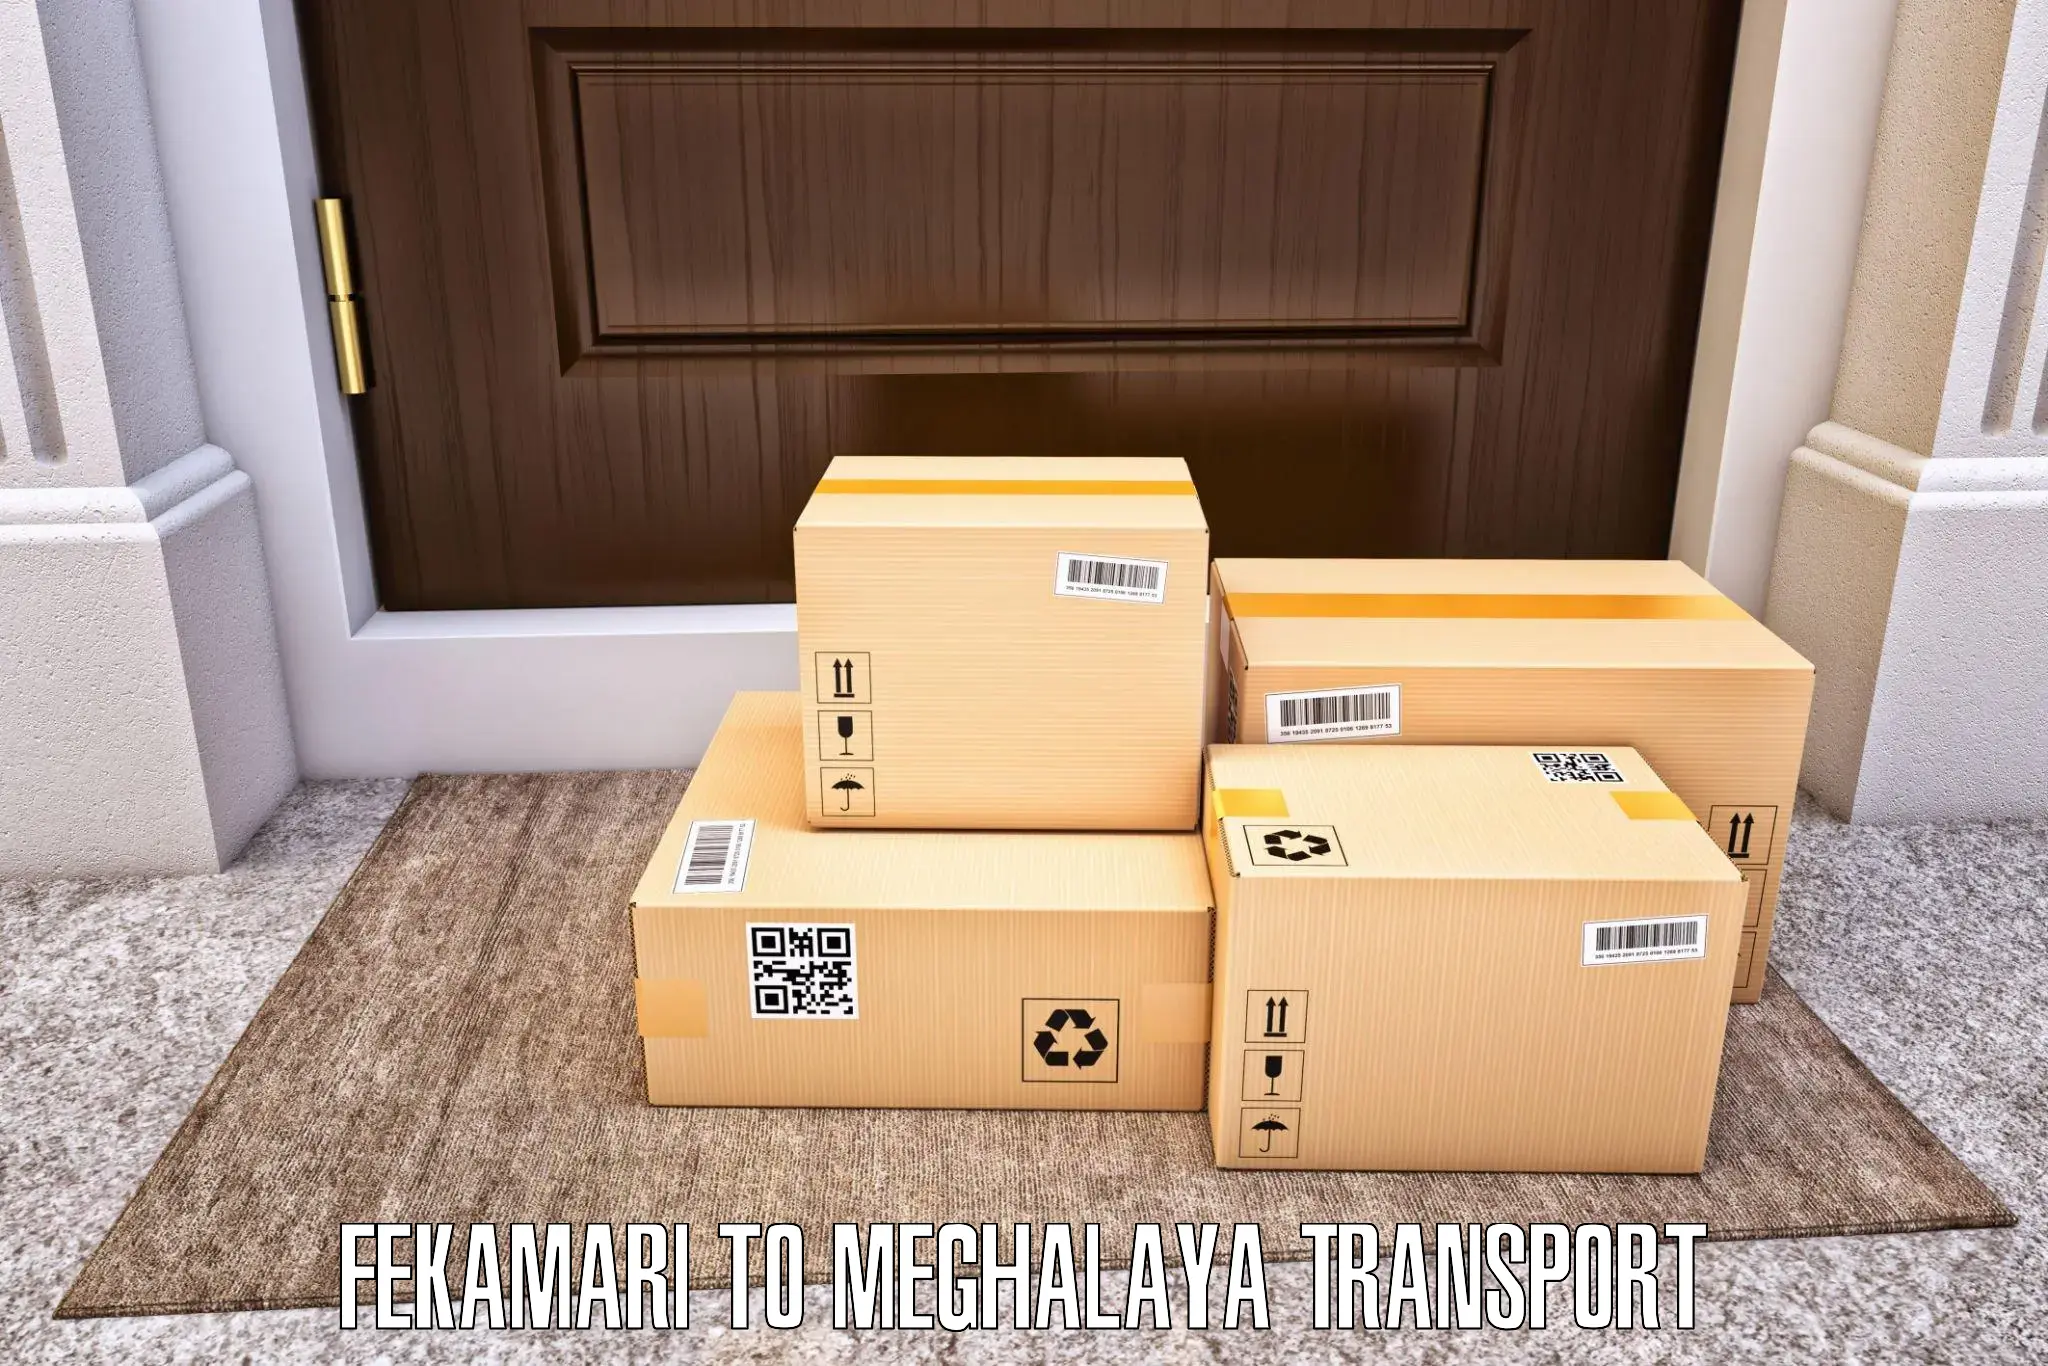 Pick up transport service Fekamari to NIT Meghalaya